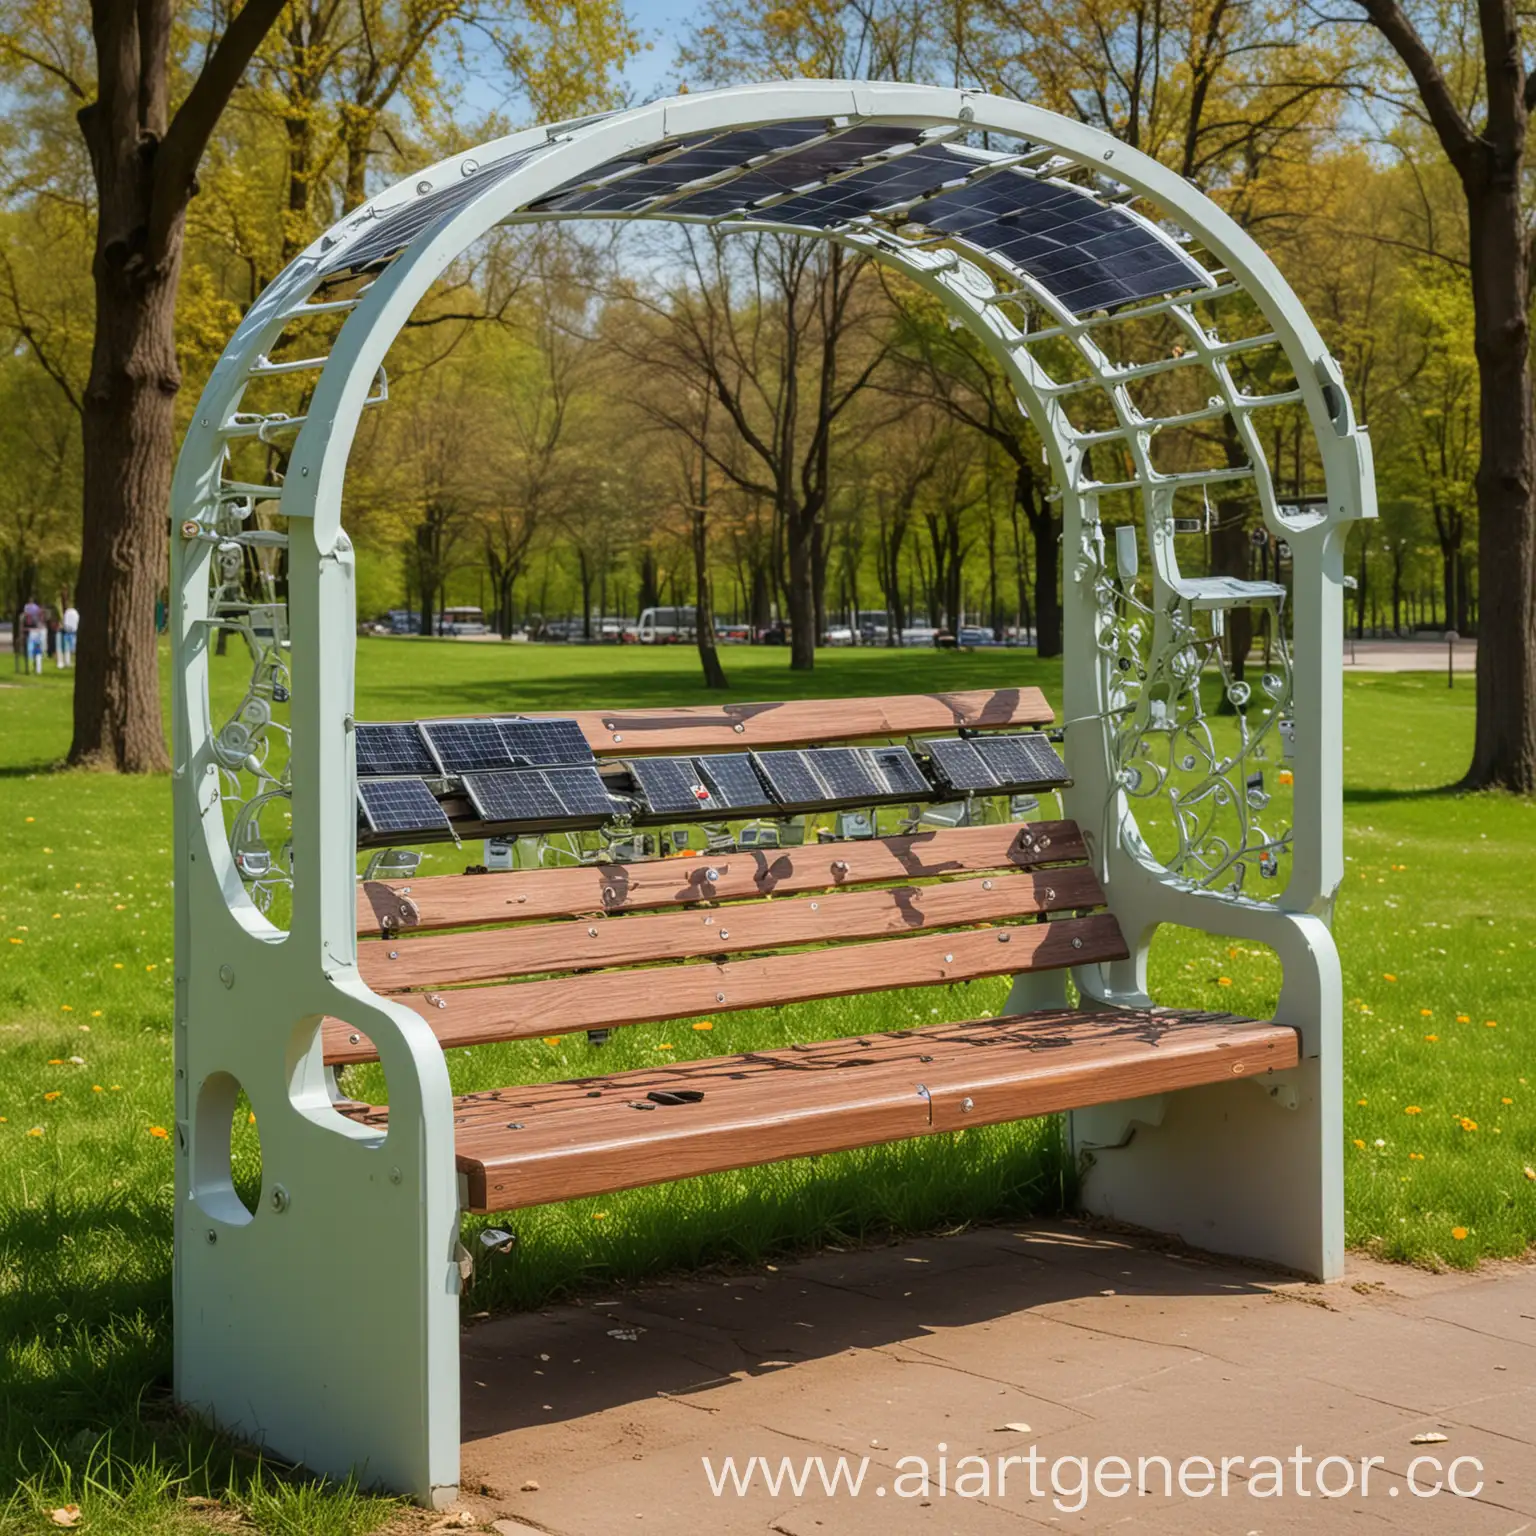 скамейка в парке с аркой из солнечных батарей